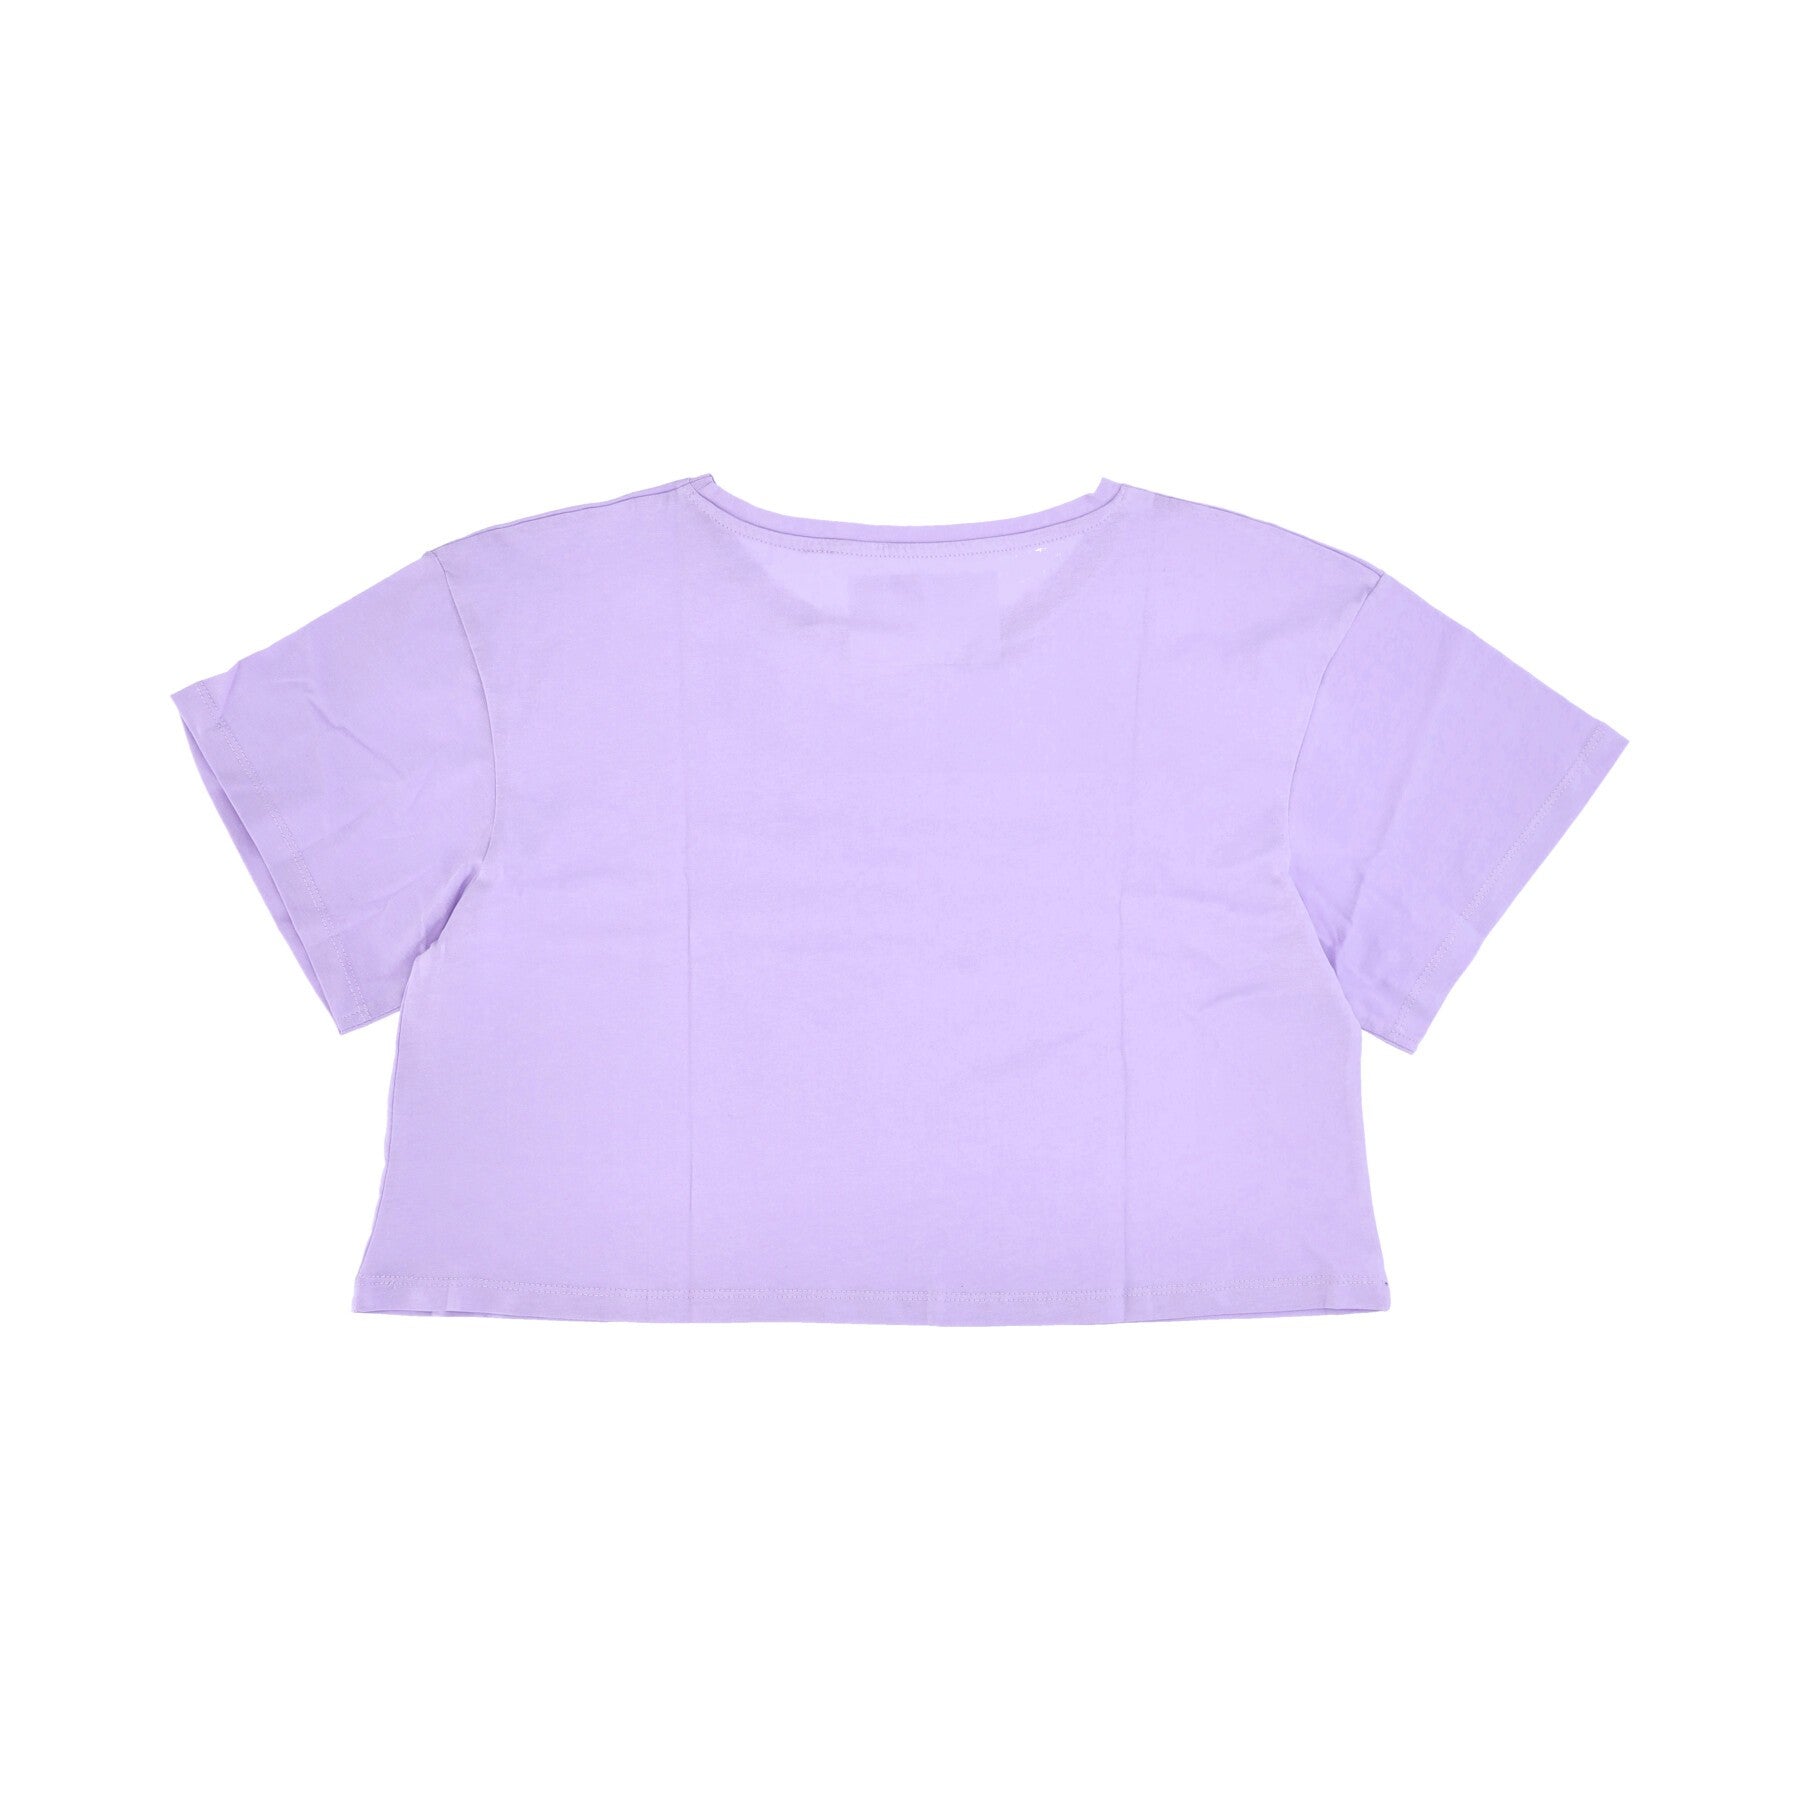 Donatella 19 Women's Cropped T-Shirt